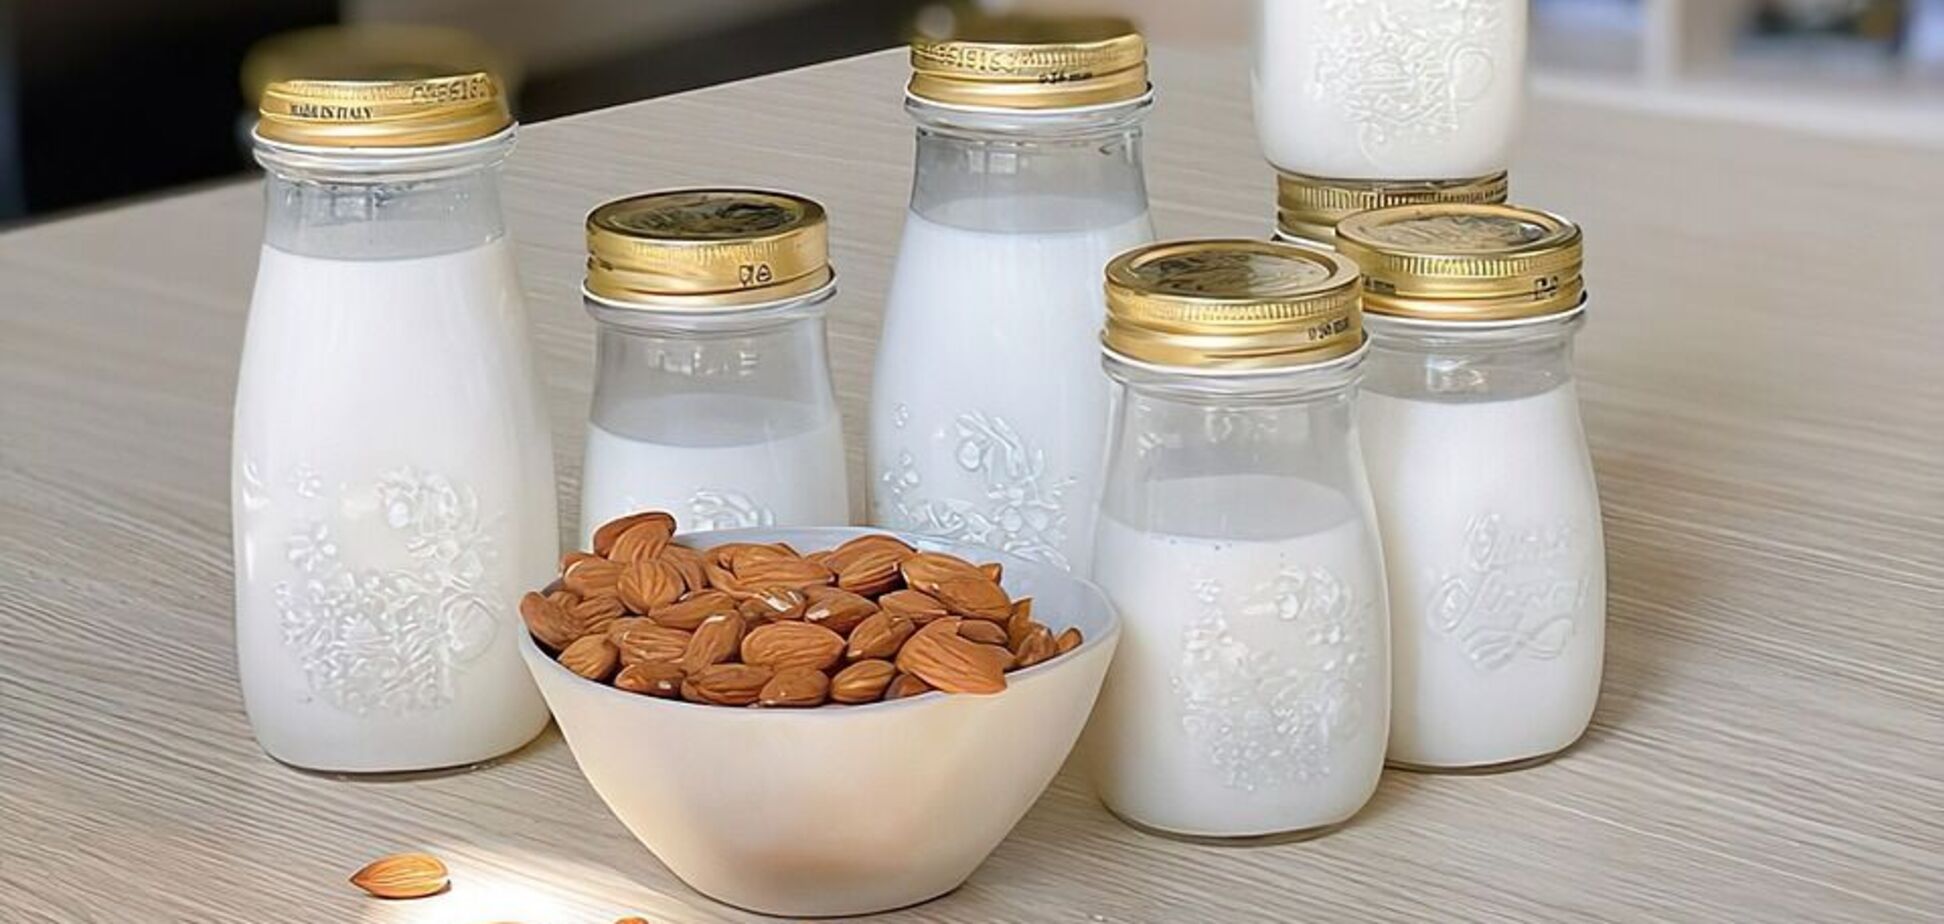 Домашнє рослинне молоко: ідеальне під час посту та корисне для здоров’я